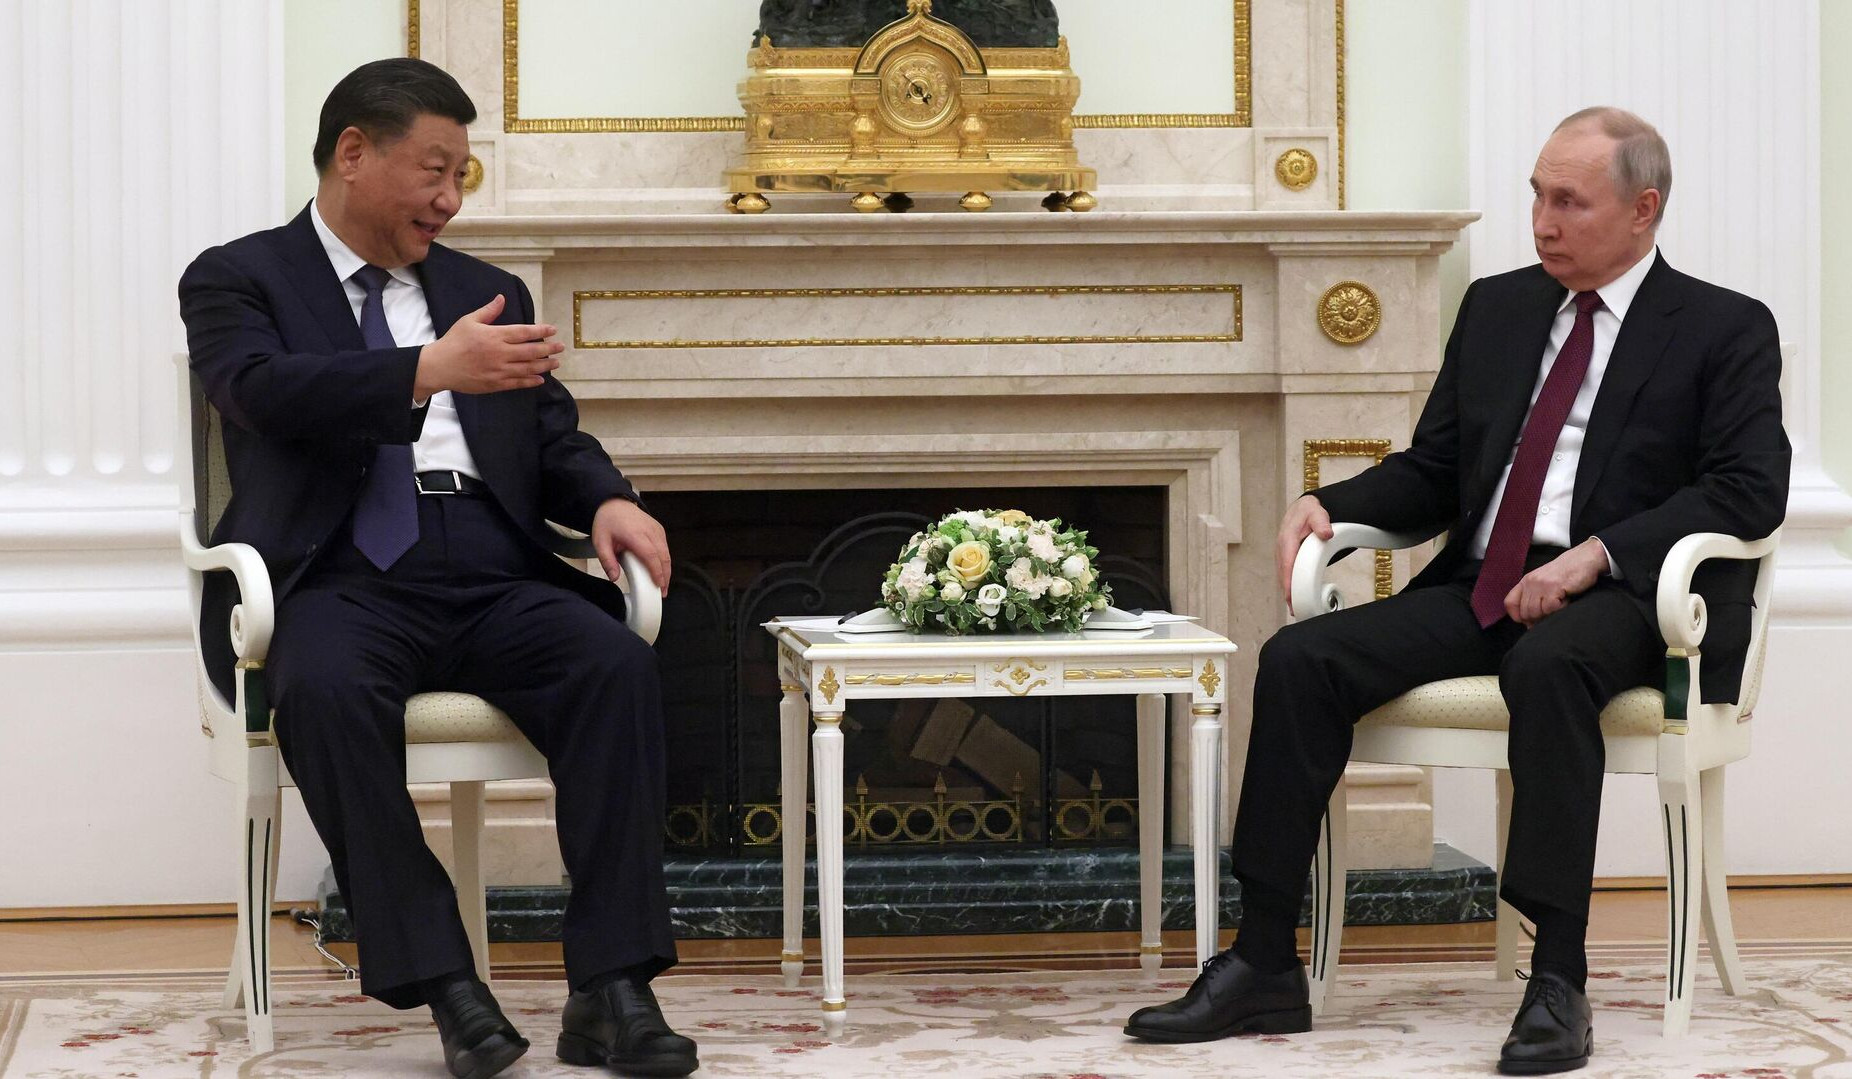 Կրեմլում Ռուսաստանի և Չինաստանի նախագահների ոչ պաշտոնական հանդիպումը տևել է շուրջ 4,5 ժամ